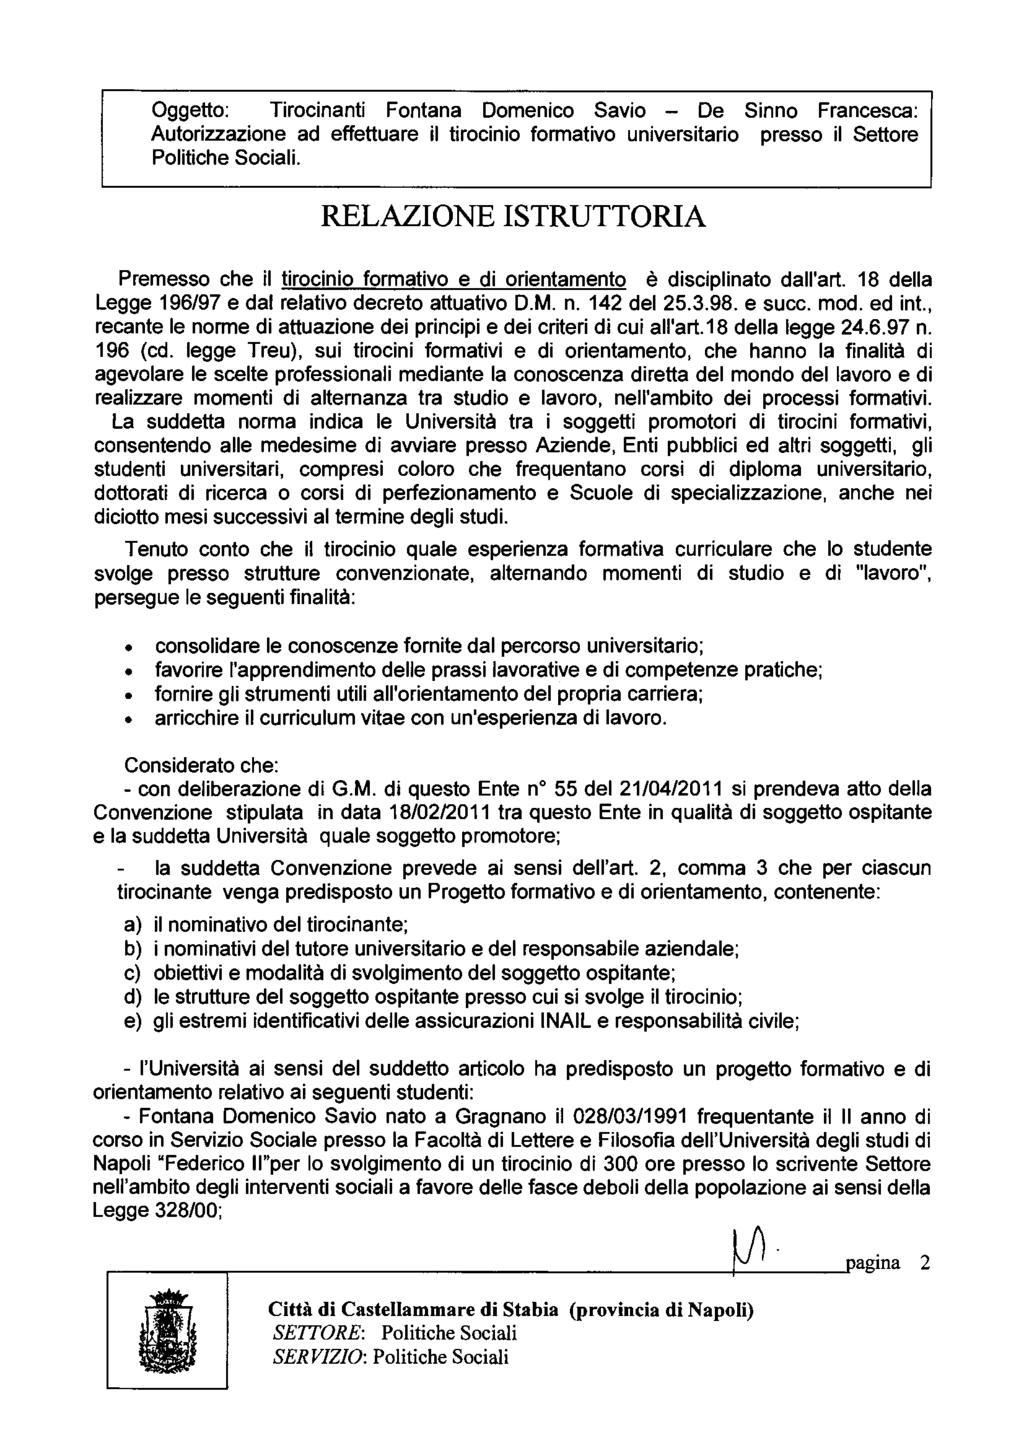 Oggetto: Tirocinanti Fontana Domenico Savio - De Sinno Francesca: Autorizzazione ad effettuare il tirocinio formativo universitario presso il Settore Politiche Sociali.